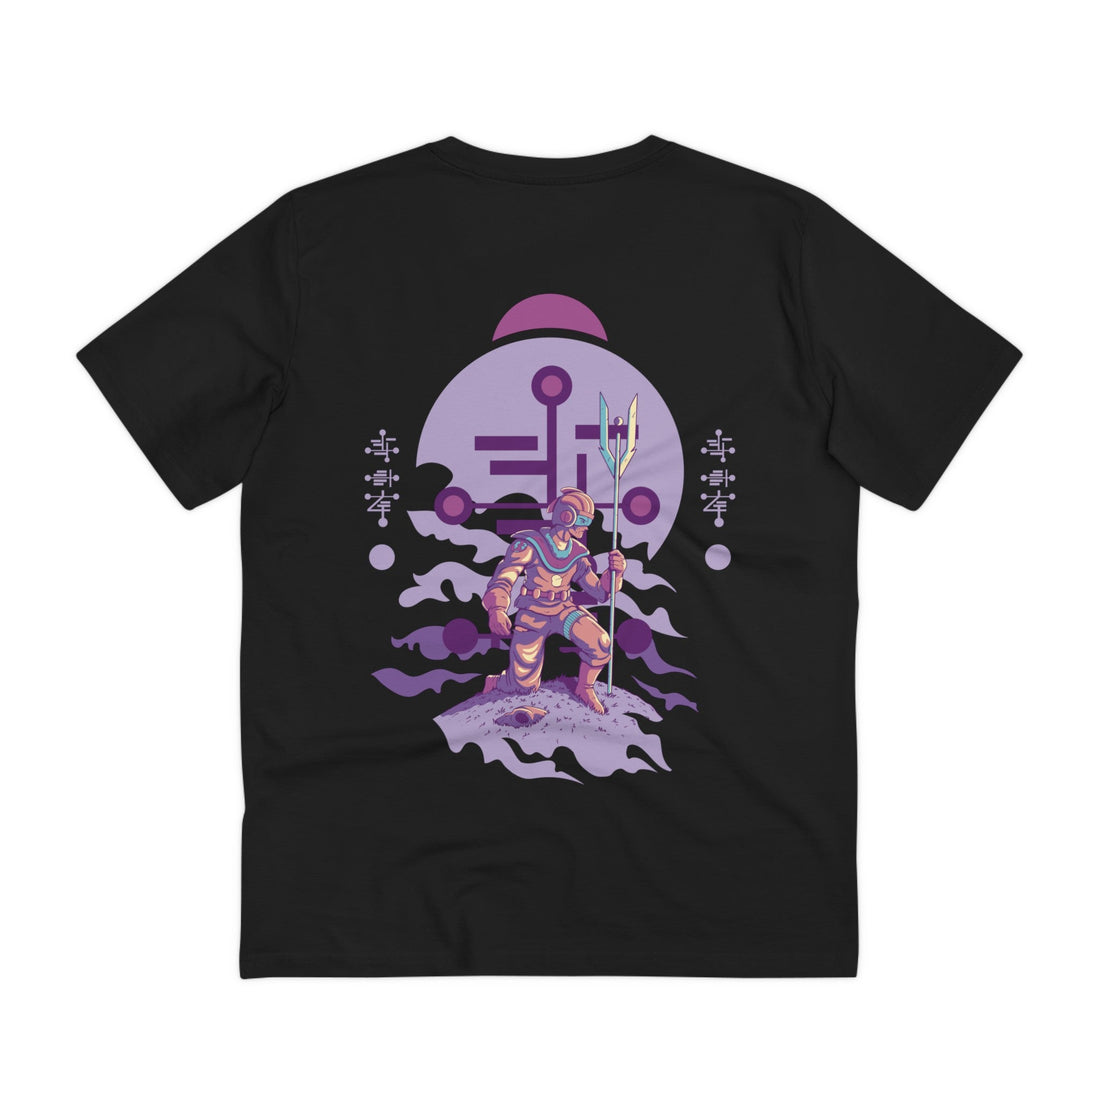 Printify T-Shirt Black / 2XS Humanoid Alien kneeling with staff and helmet - Alien Warrior - Back Design